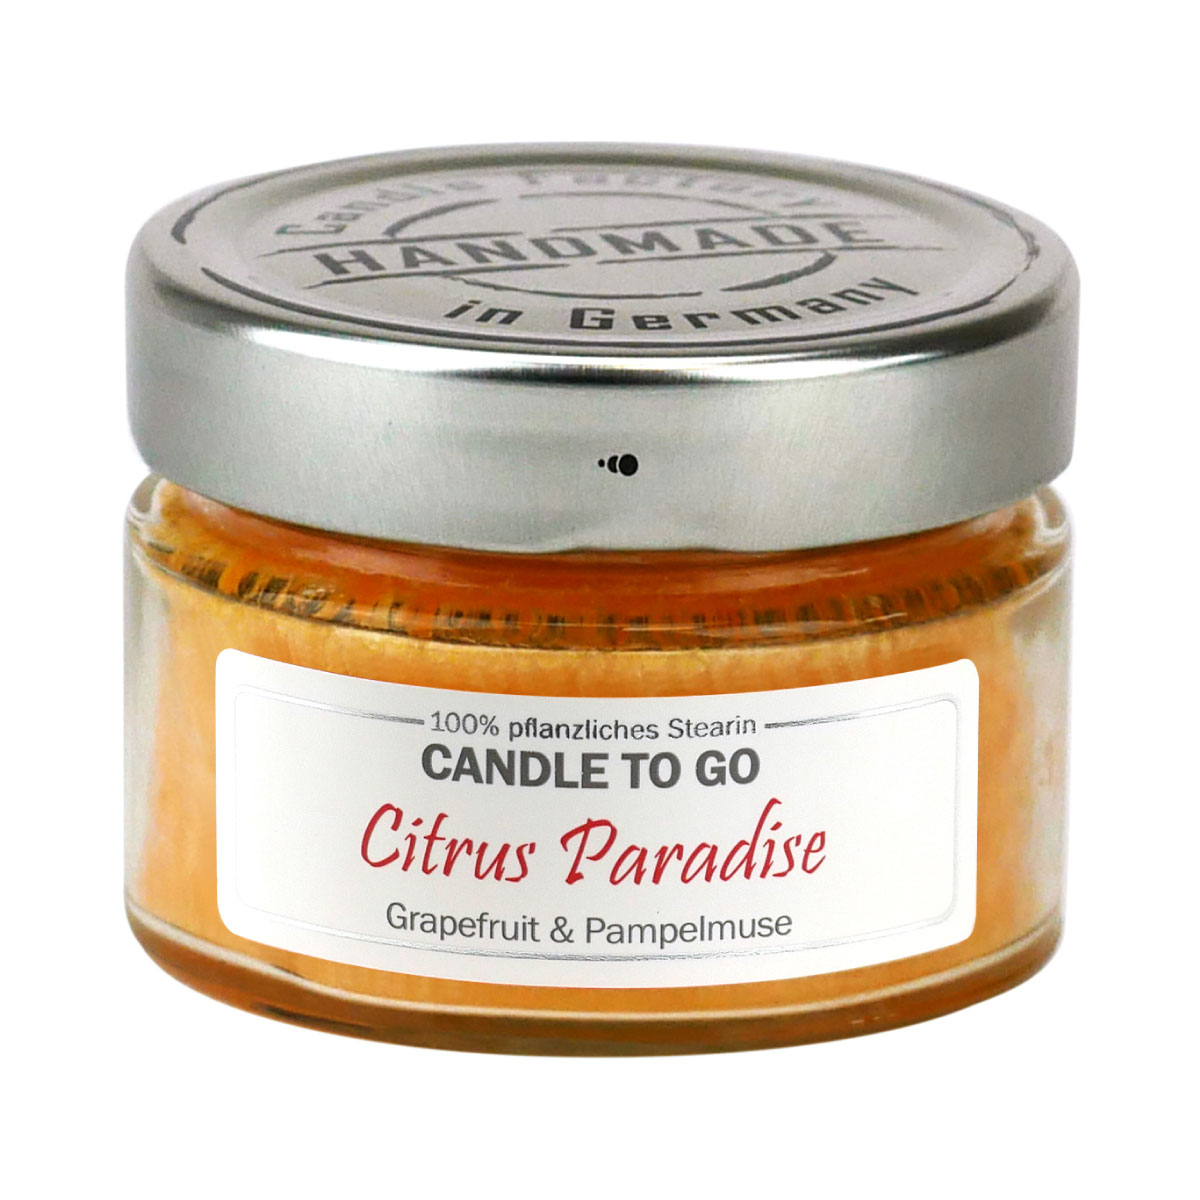 Citrus Paradise - Candle to Go Duftkerze von Candle Factory